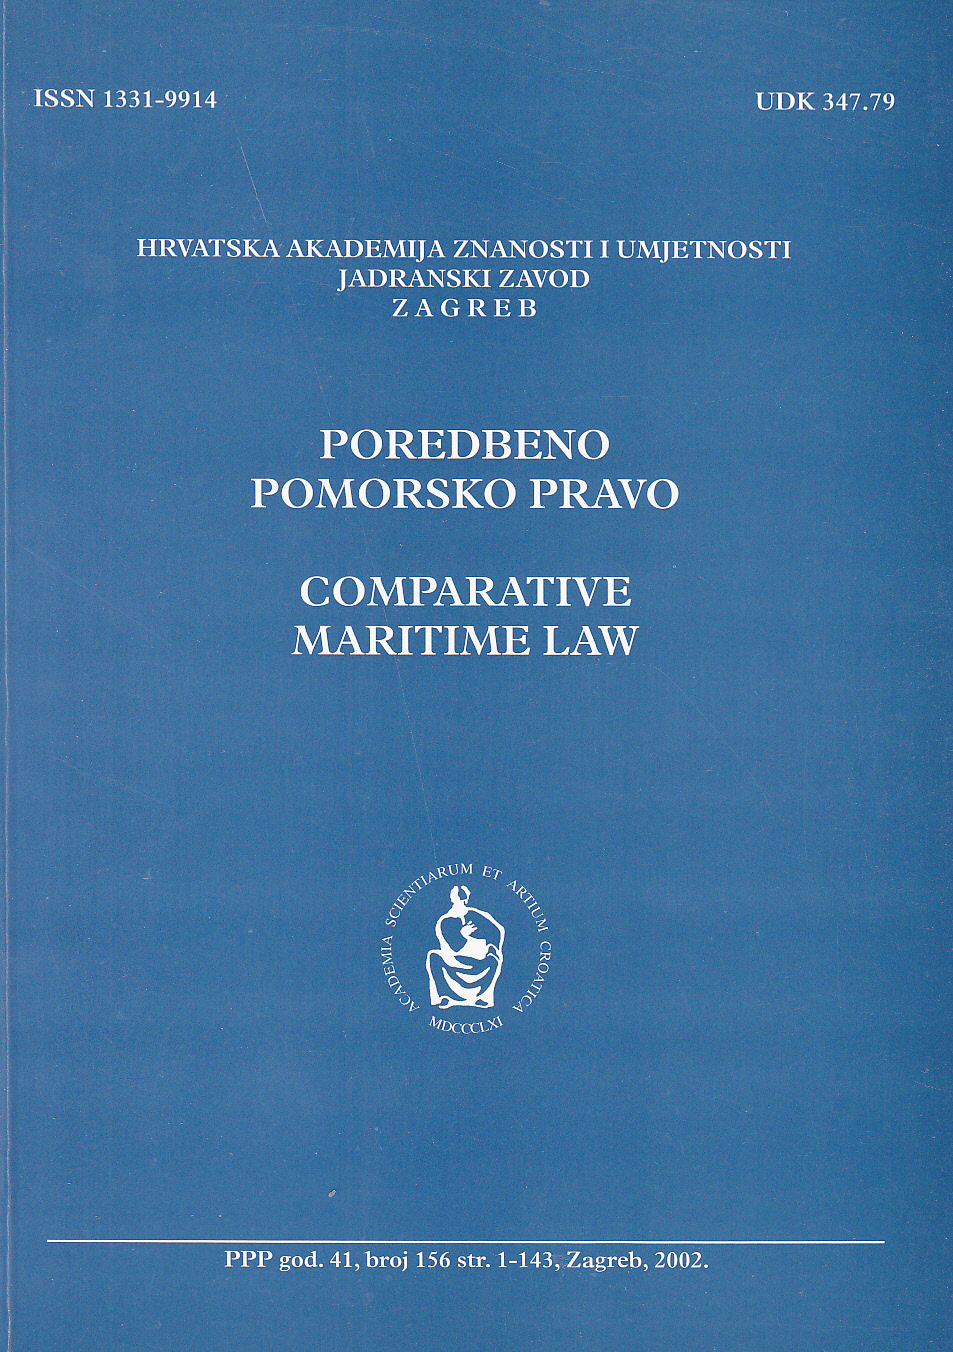 Međunarodno pravo mora i Hrvatska (autor: V. Ibler)(Zagreb, Barbat, 2001.) : [prikaz knjige]